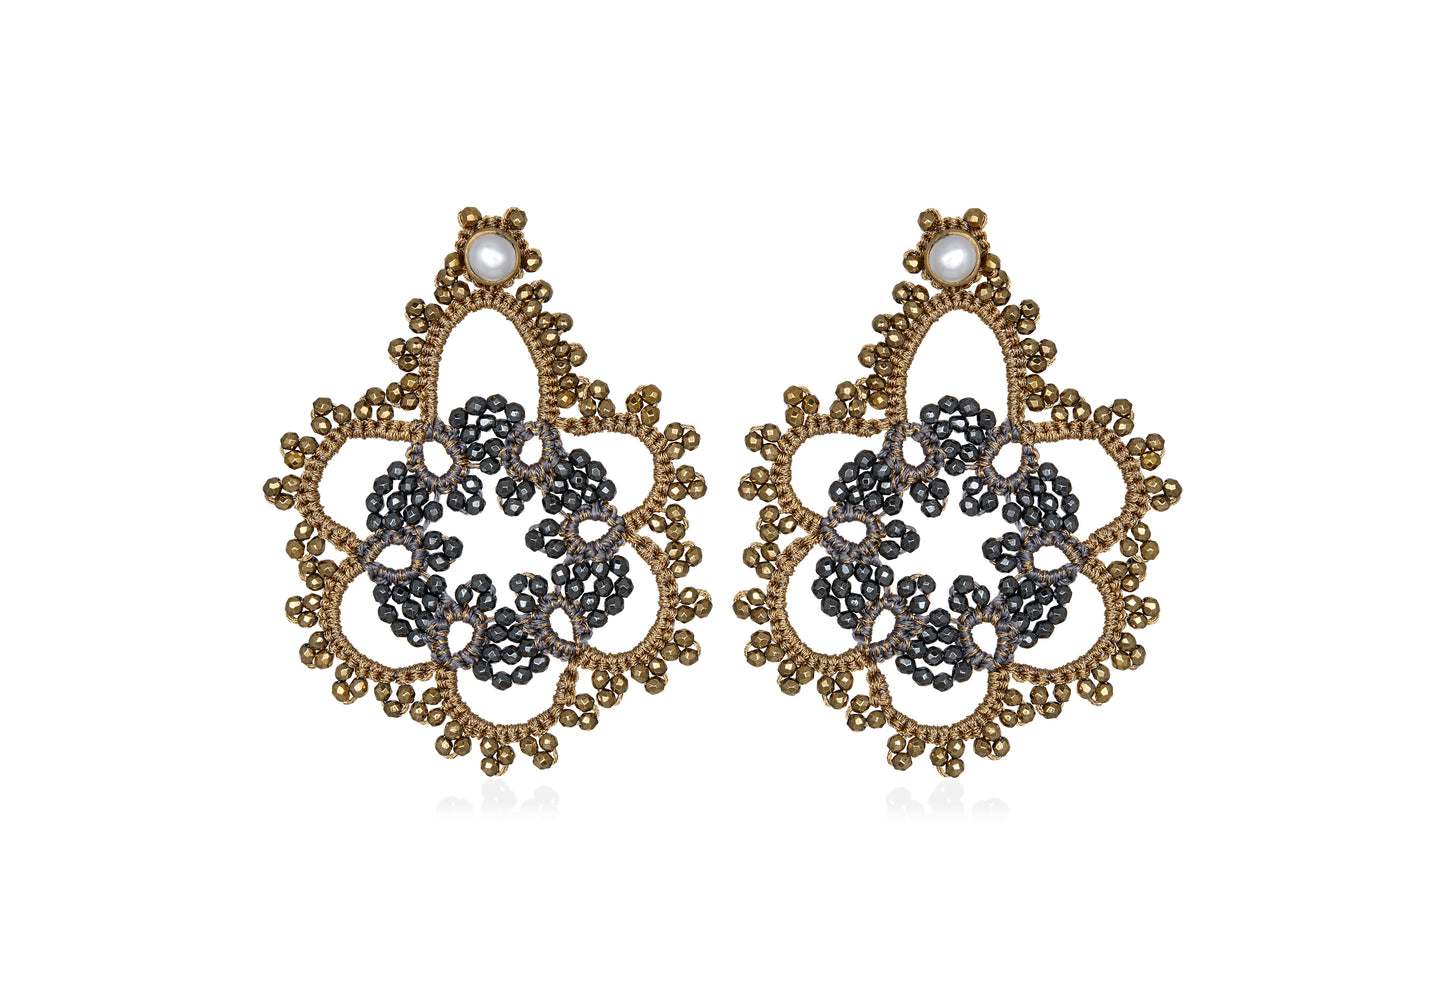 Flower bi-tone lace earrings, gold dark grey